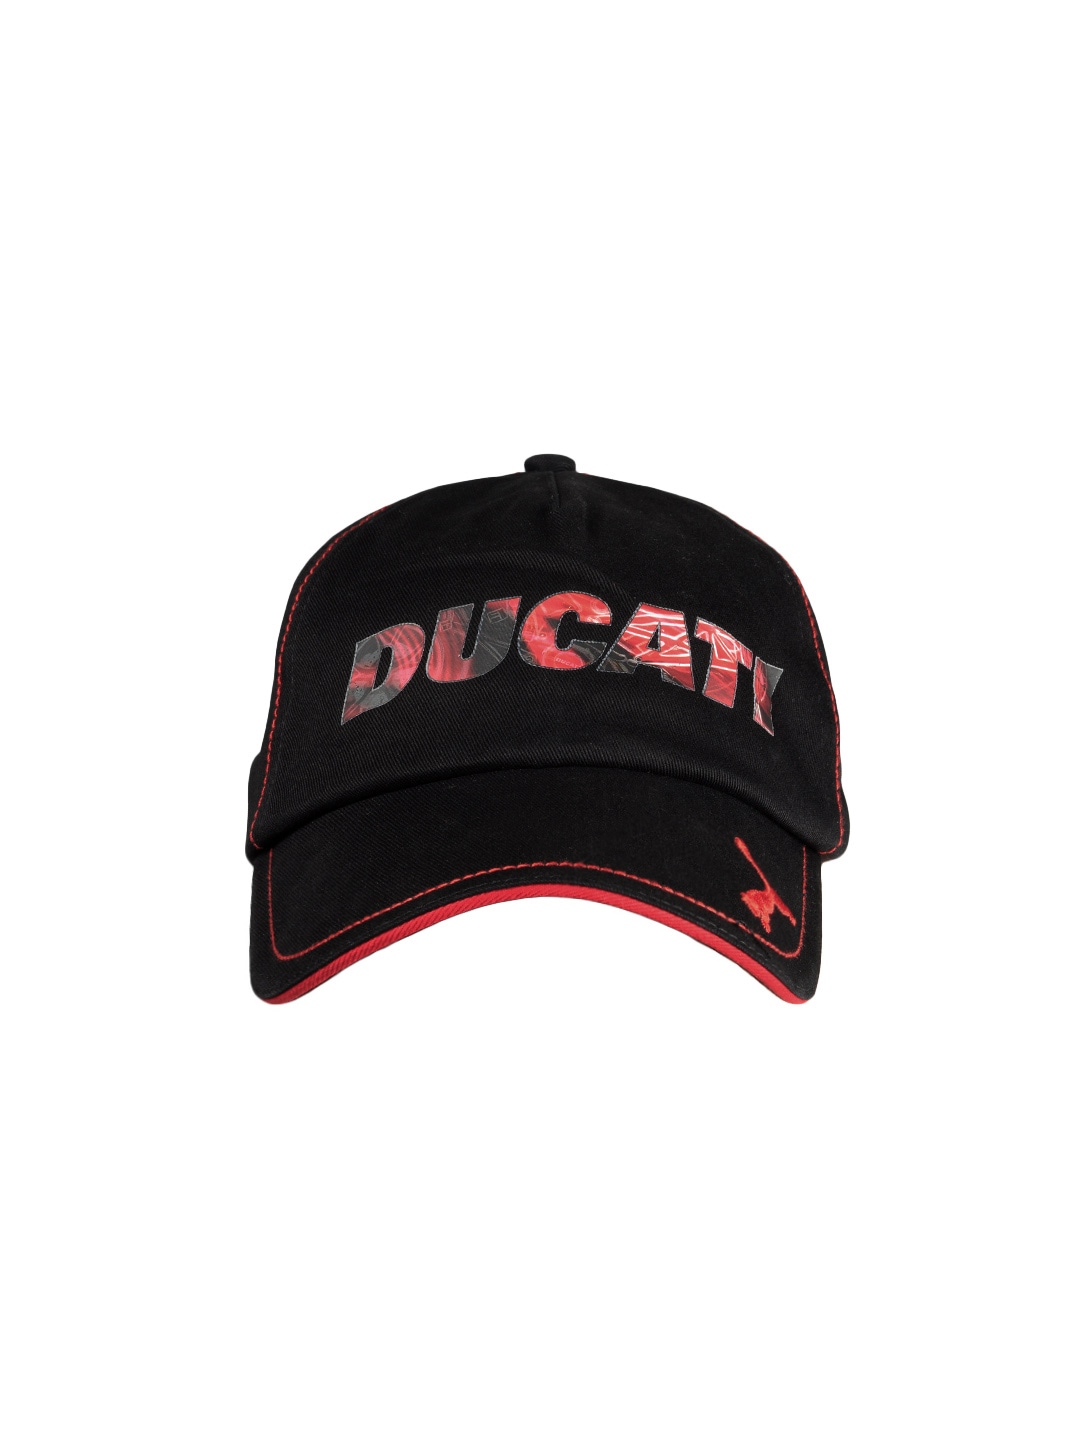 Puma Unisex Black Ducati Logo Cap